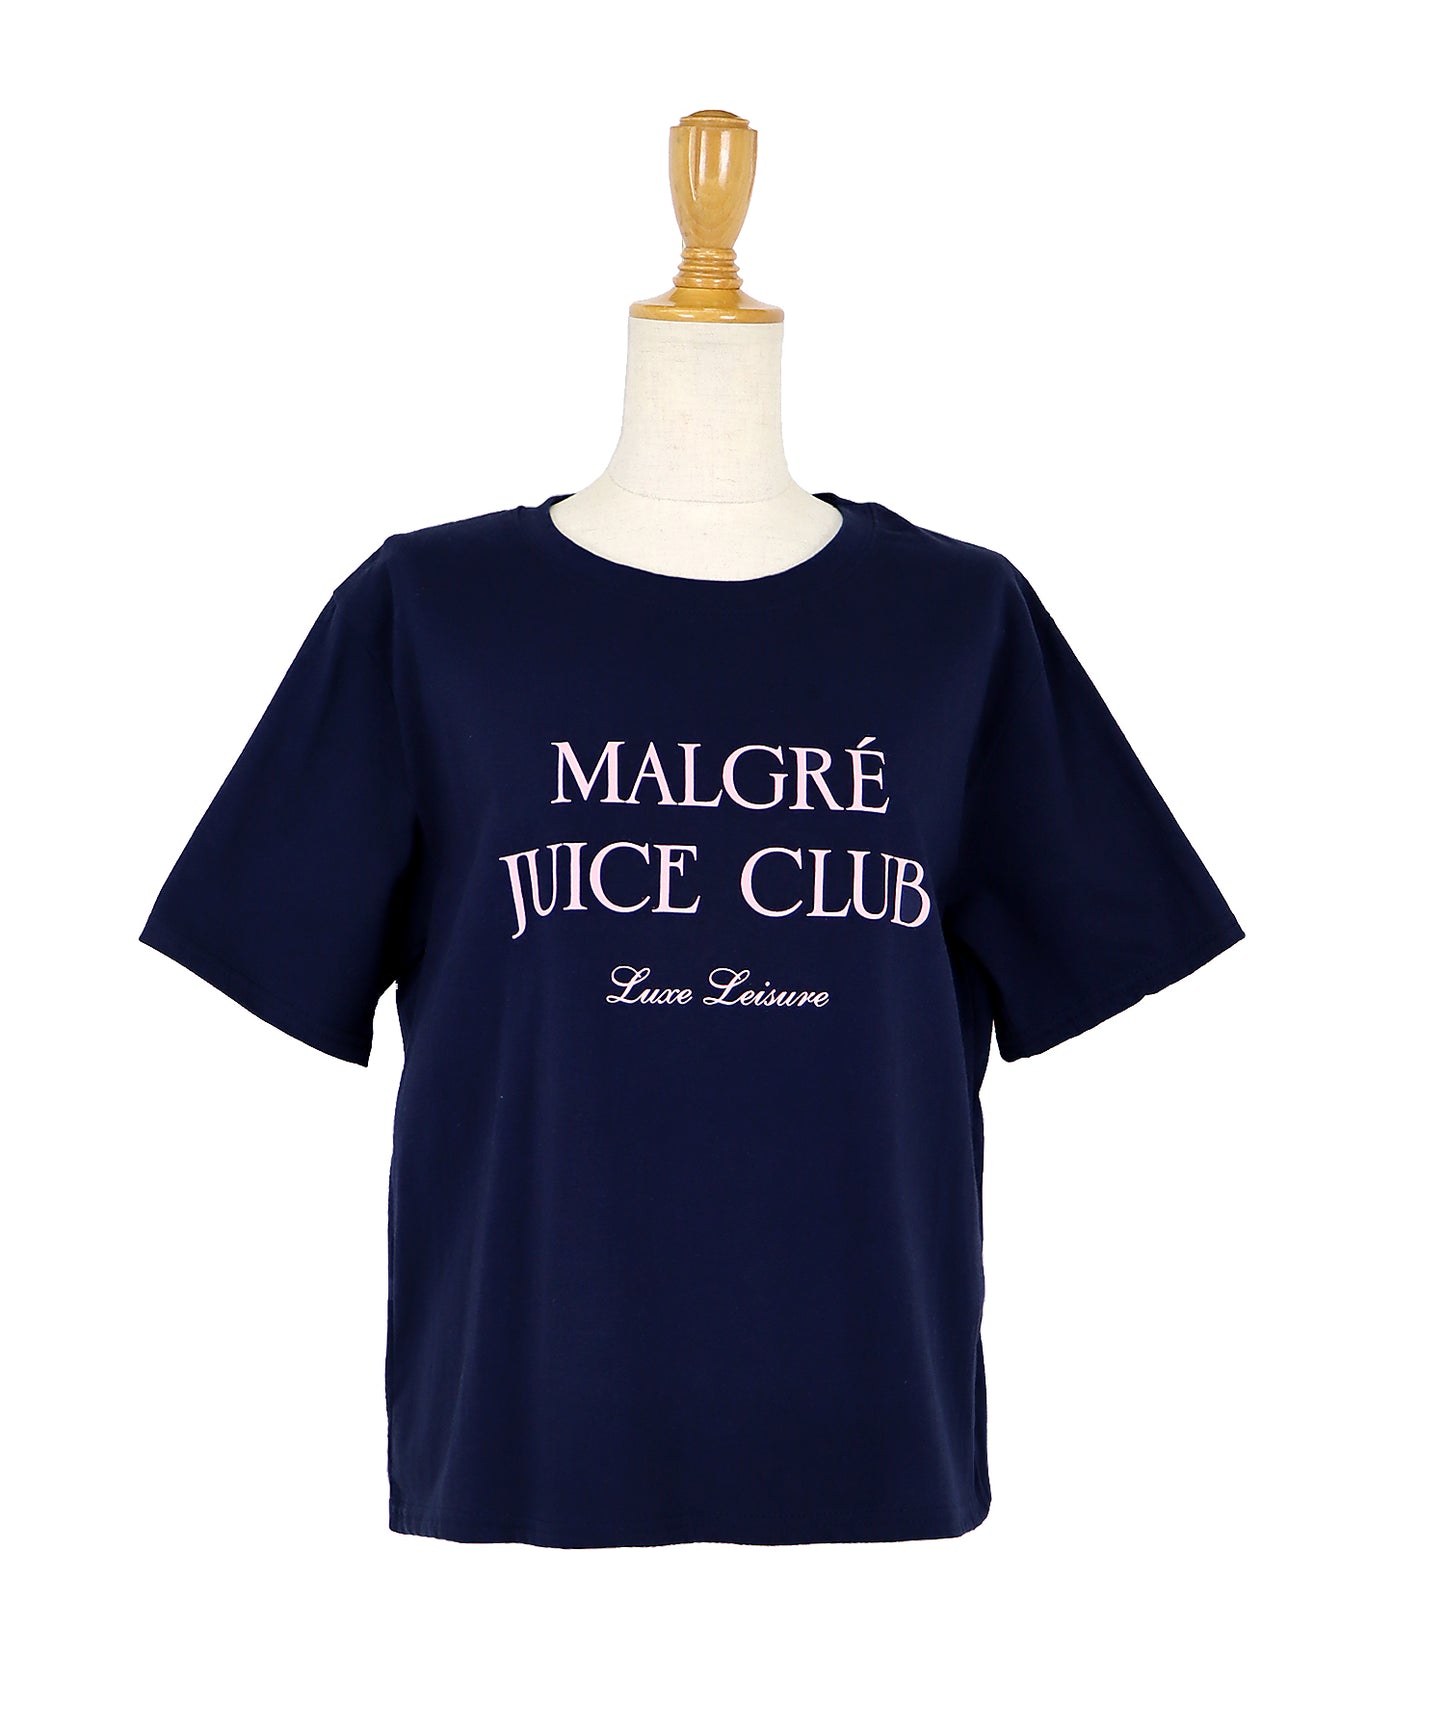 MALGRE JUICE CLUBプリントTシャツ【ゆうパケット】